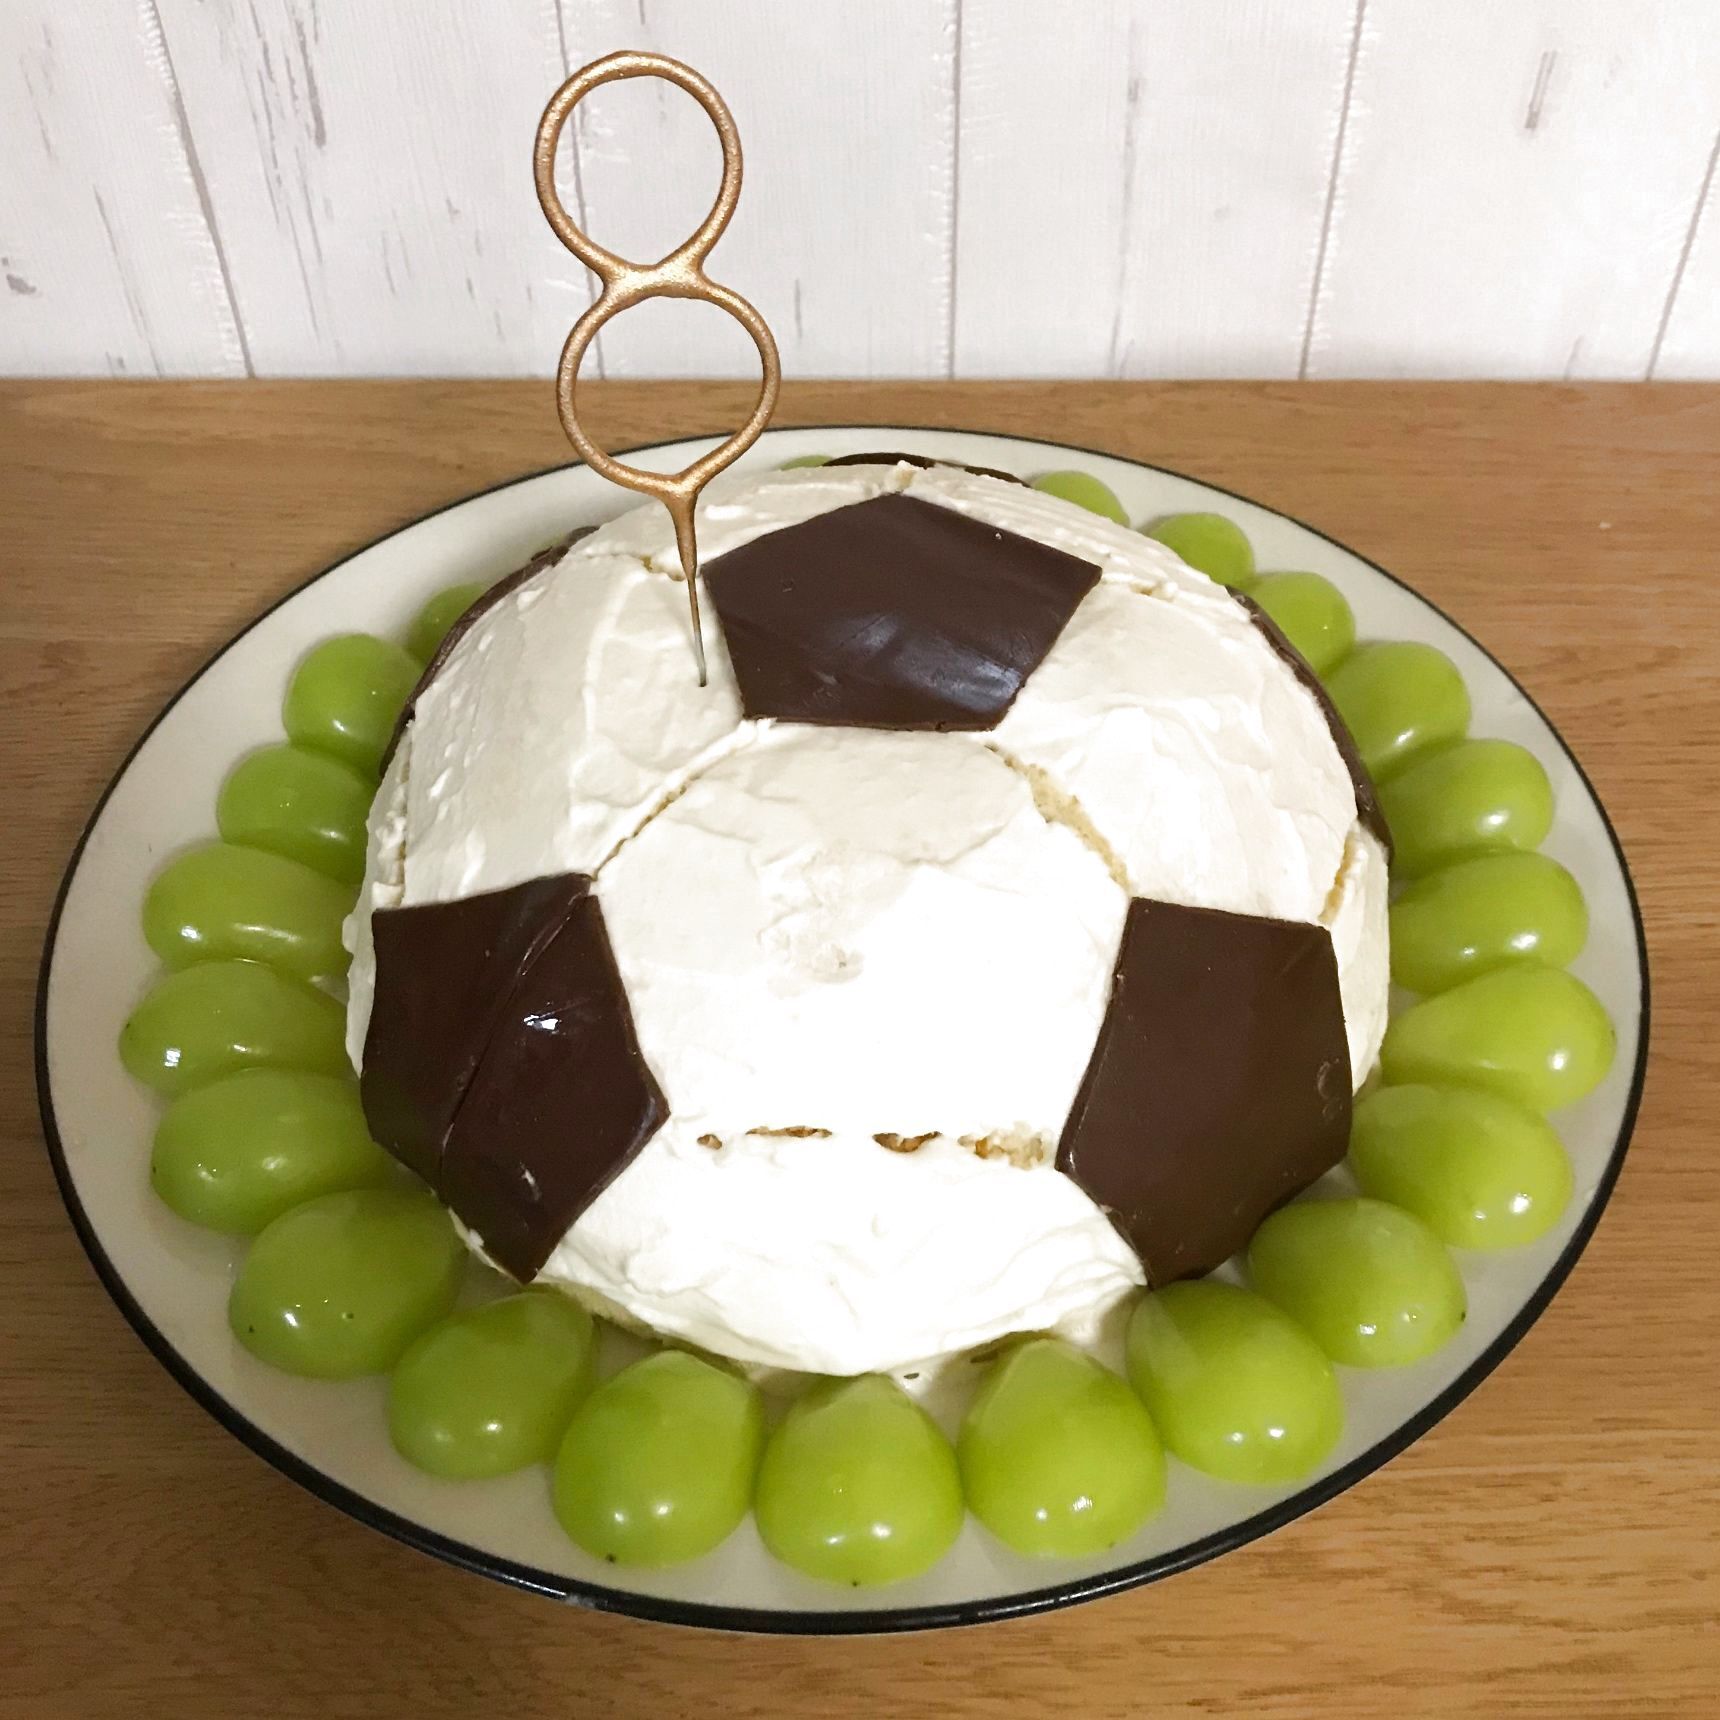 サッカー少年のお誕生日には大好きなサッカーケーキでお祝い 暮らしニスタ